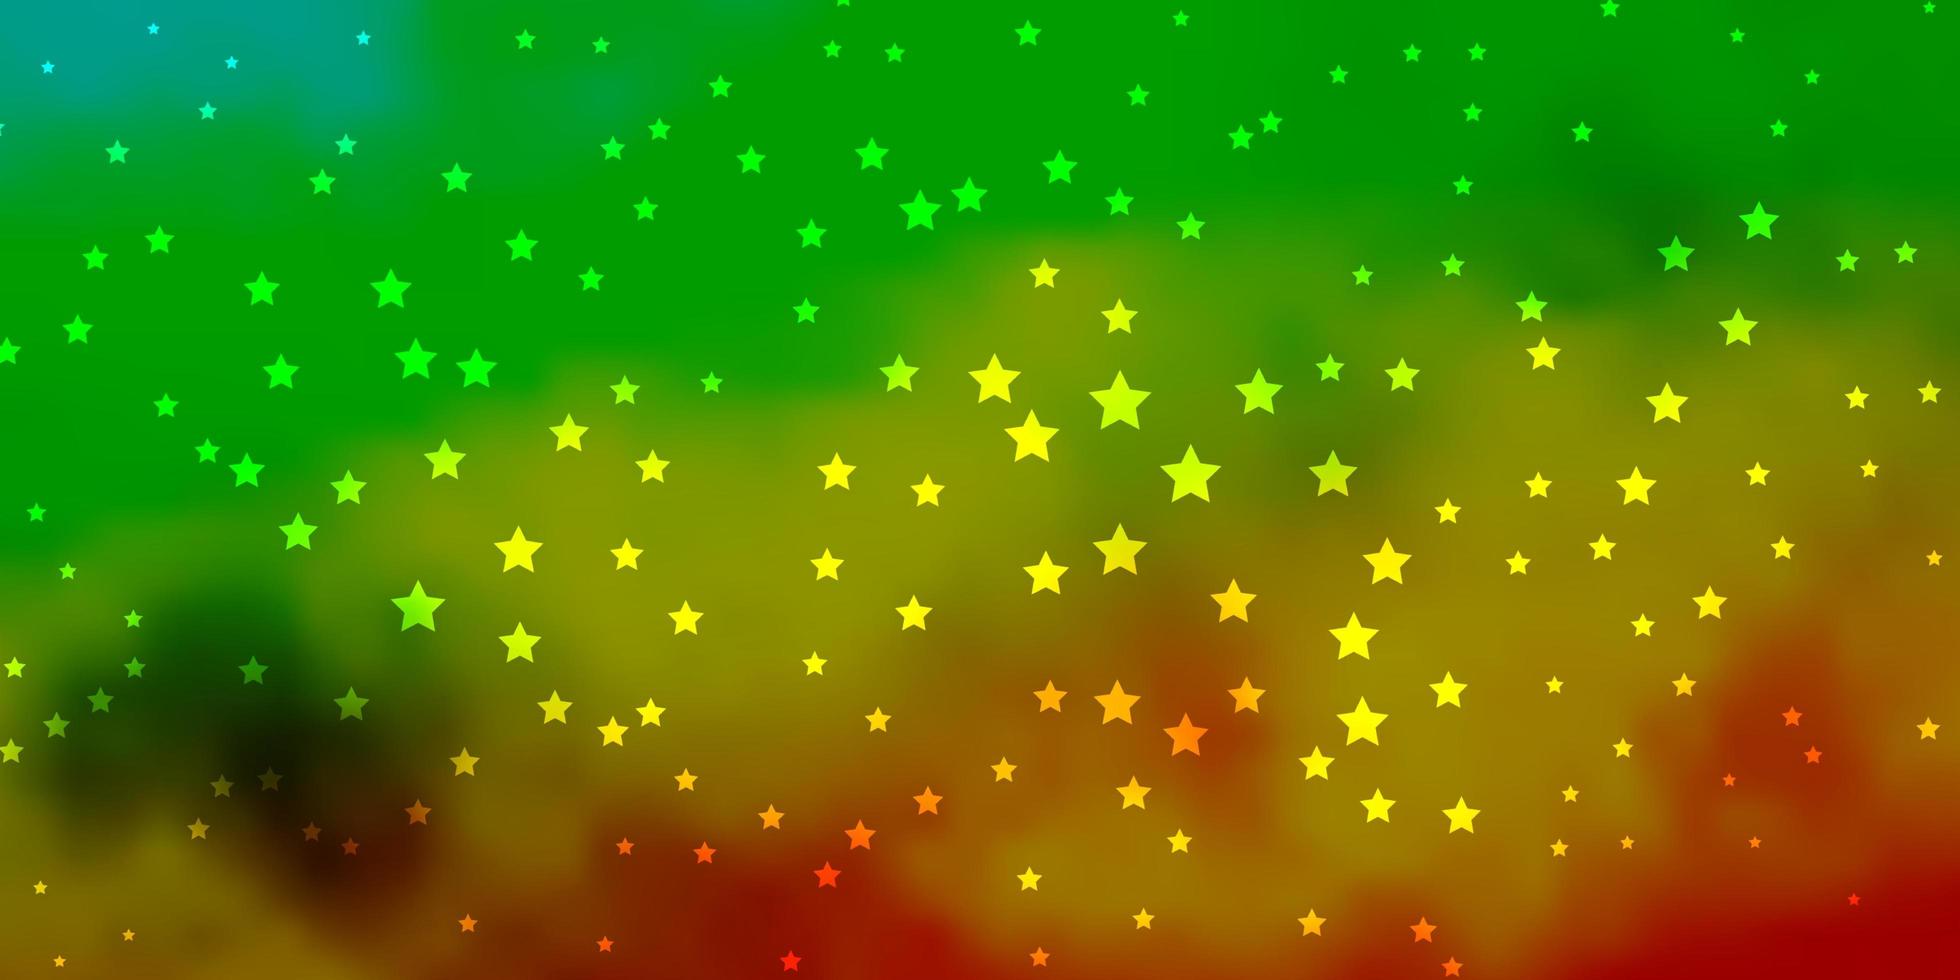 mörkgrönt gult vektormönster med abstrakta stjärnor suddar dekorativ design i enkel stil med stjärnmönster för nyårsannonsbroschyrer vektor